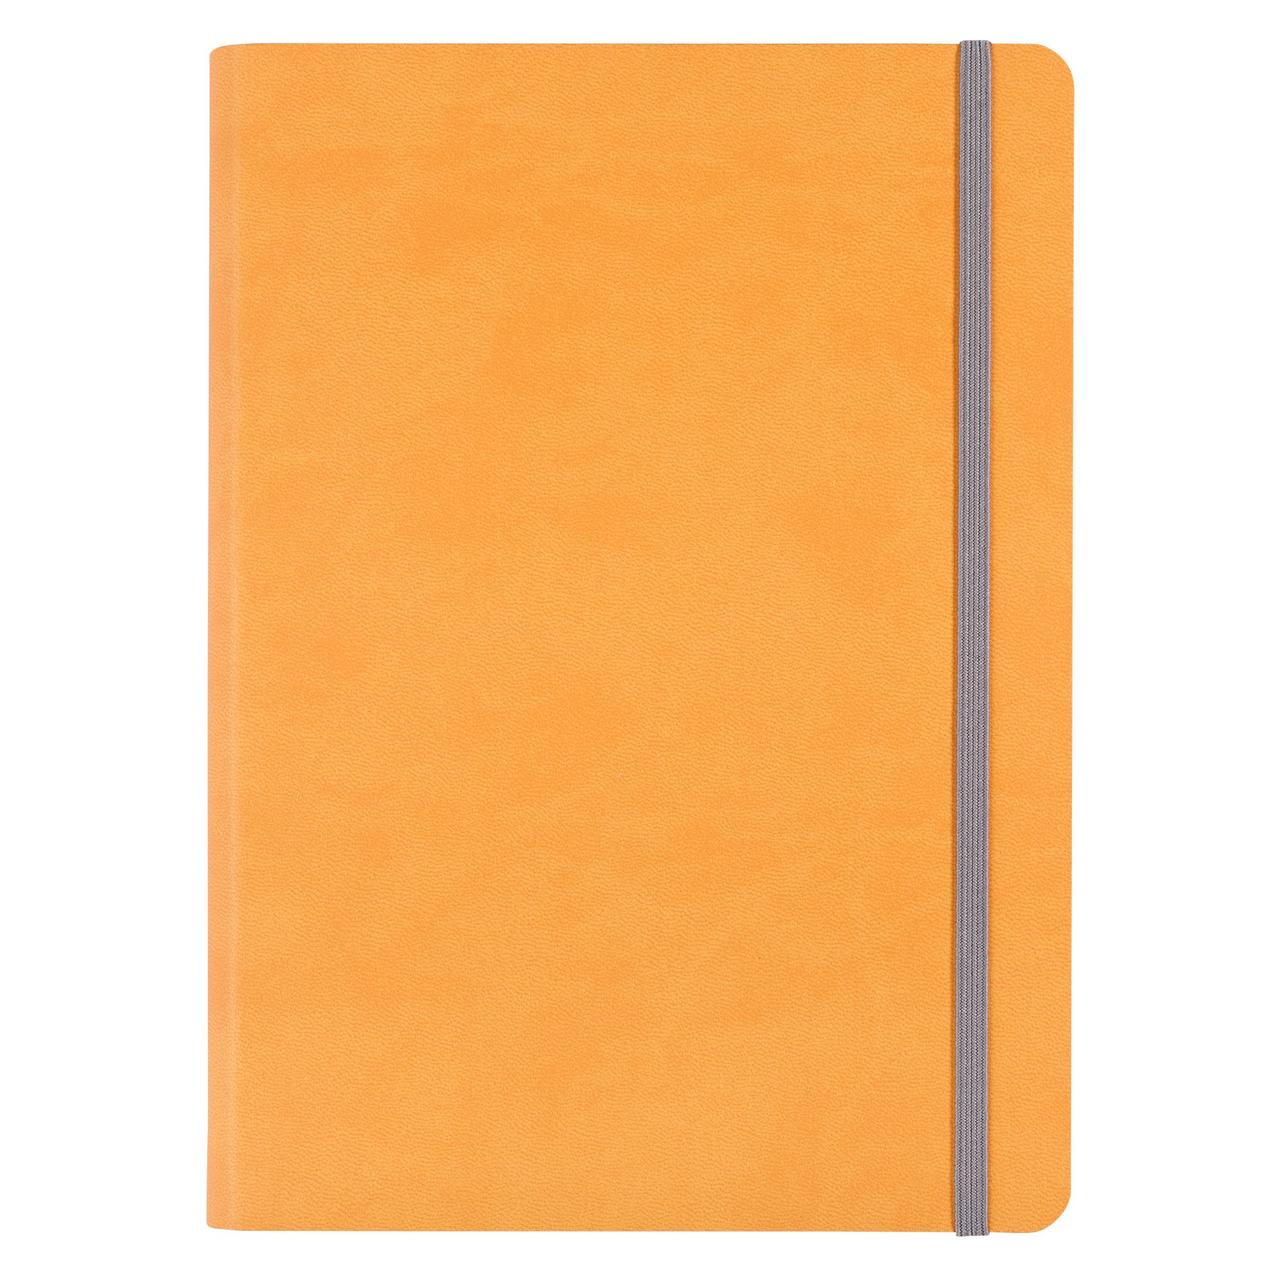 Ежедневник Vivien, недатированный, оранжевый (артикул 6653.81)